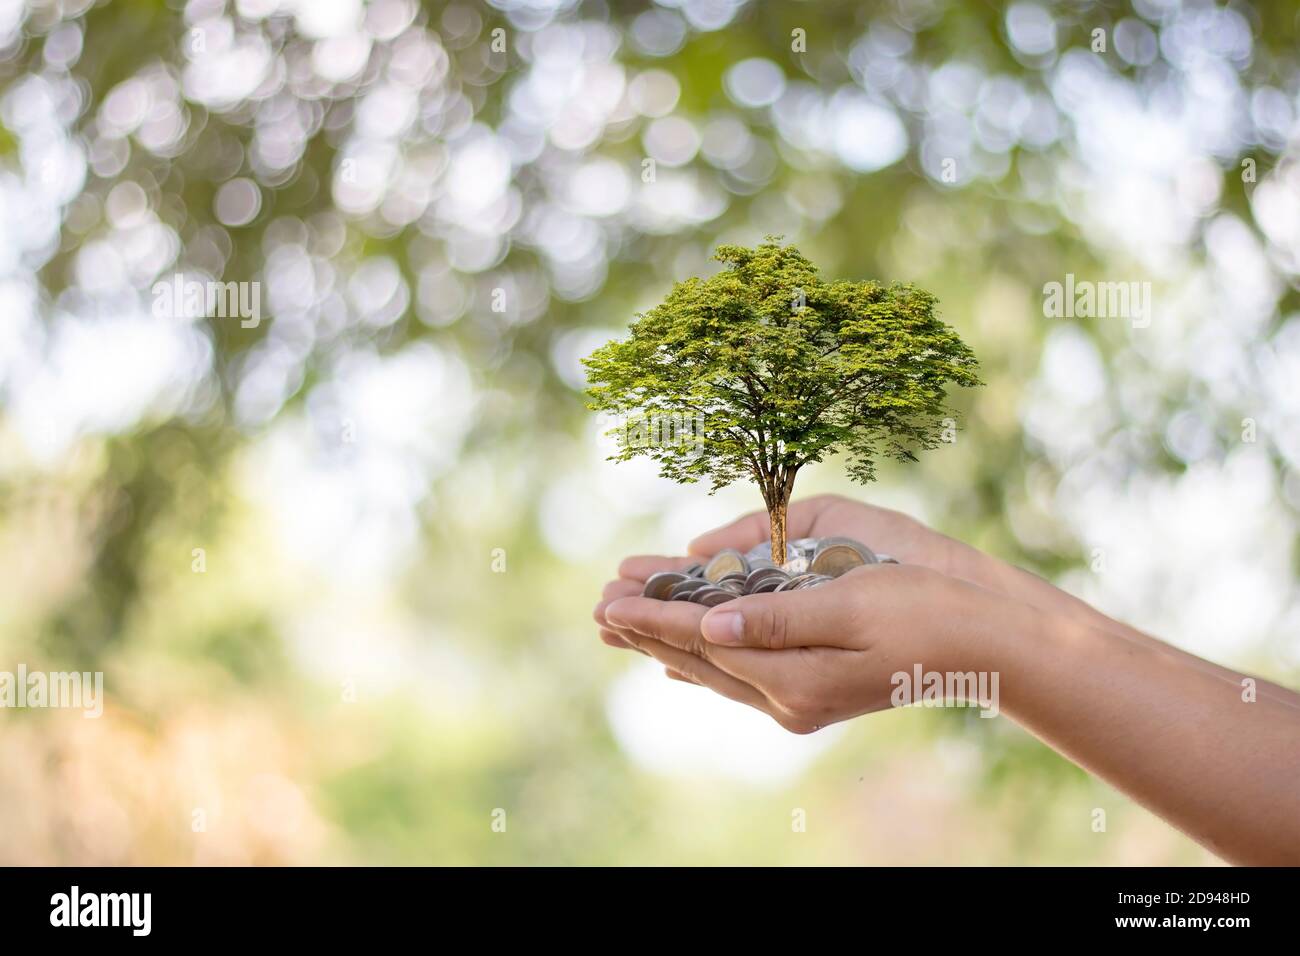 Les arbres sont plantés sur des pièces de monnaie entre les mains humaines avec des fonds naturels flous, des idées de croissance végétale et des investissements respectueux de l'environnement. Banque D'Images